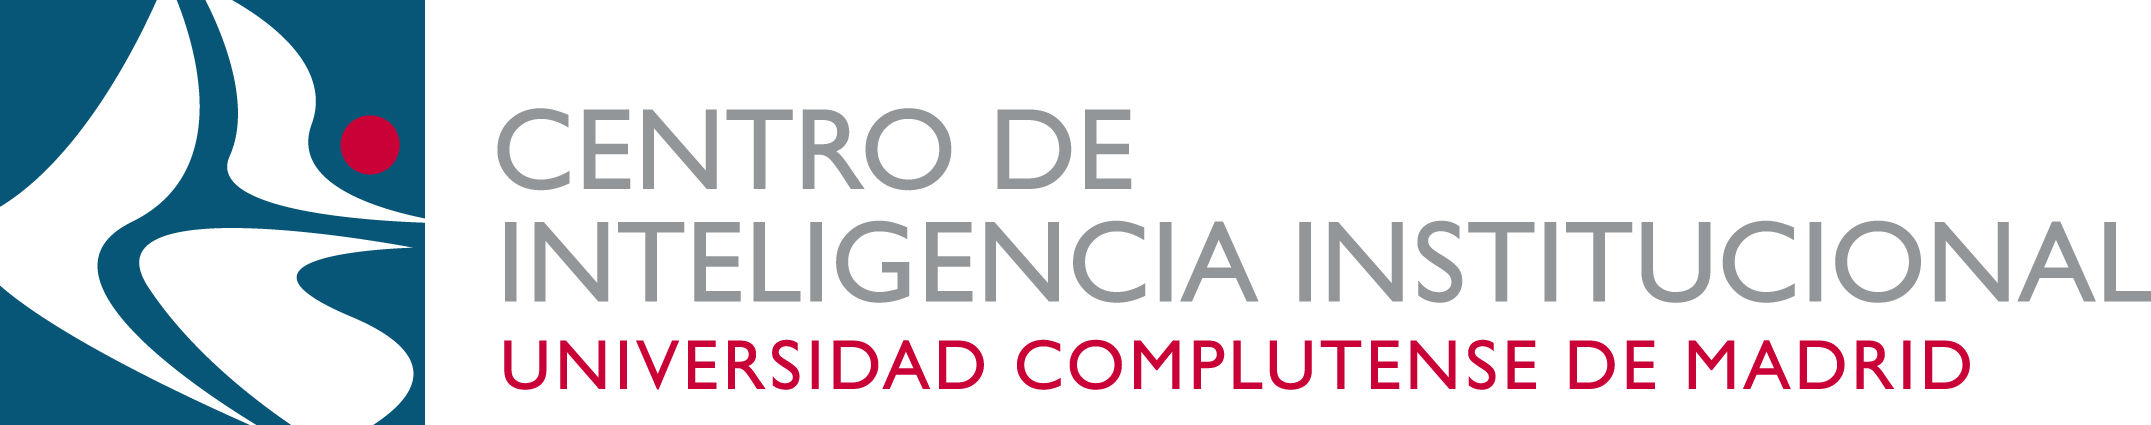 Logo Centro de Inteligencia Institucional